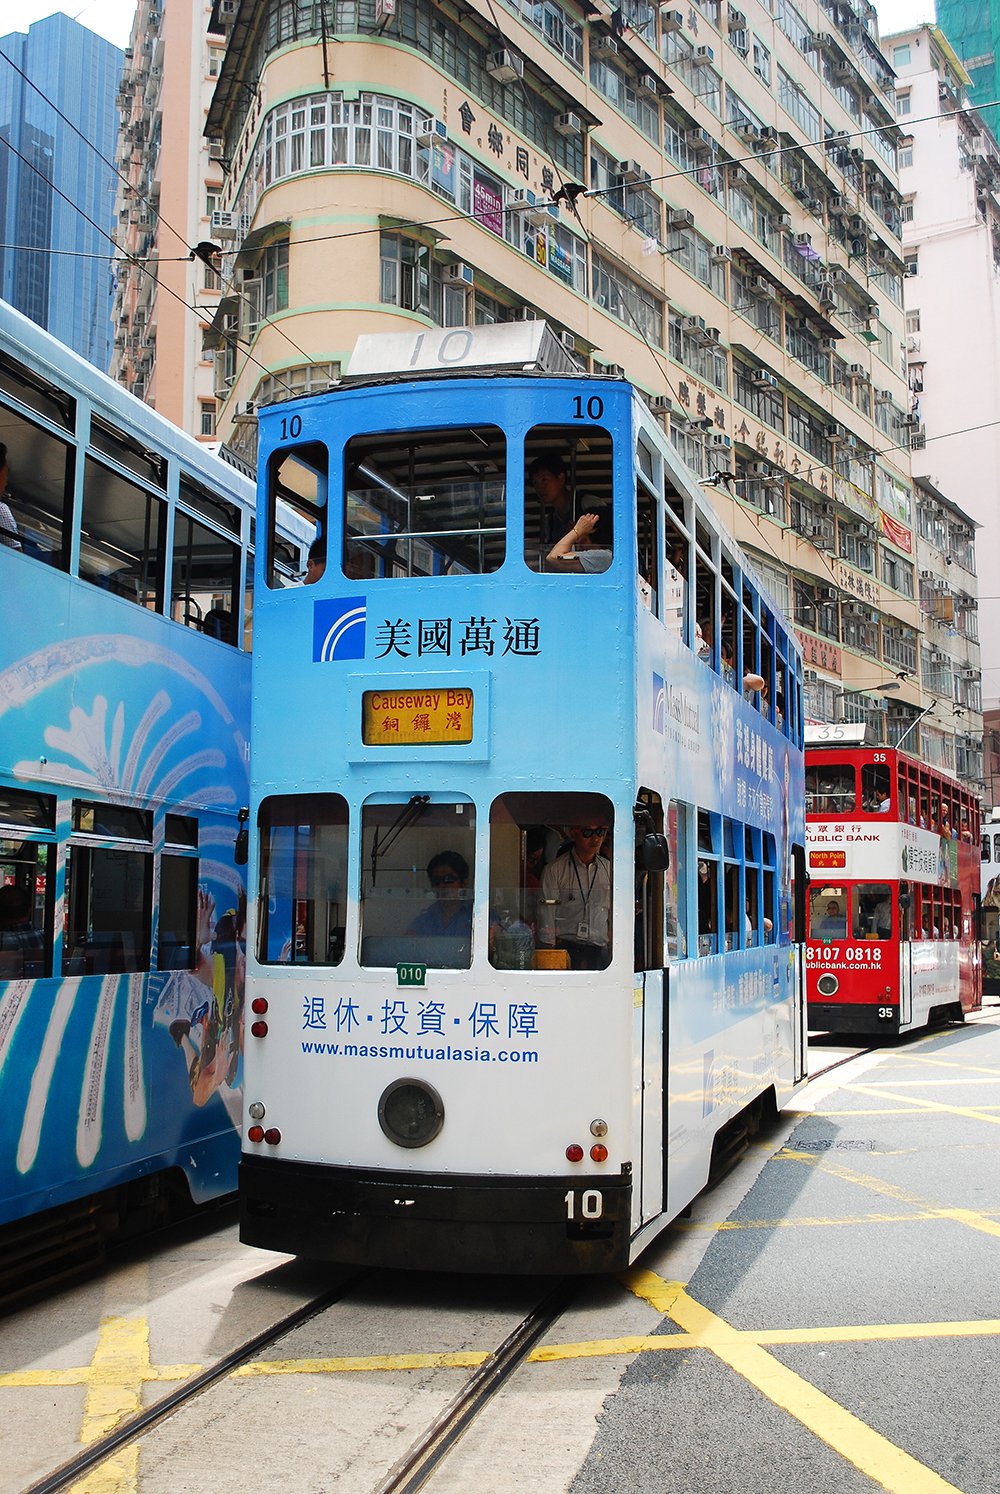 BLUE TRAM HK.jpg